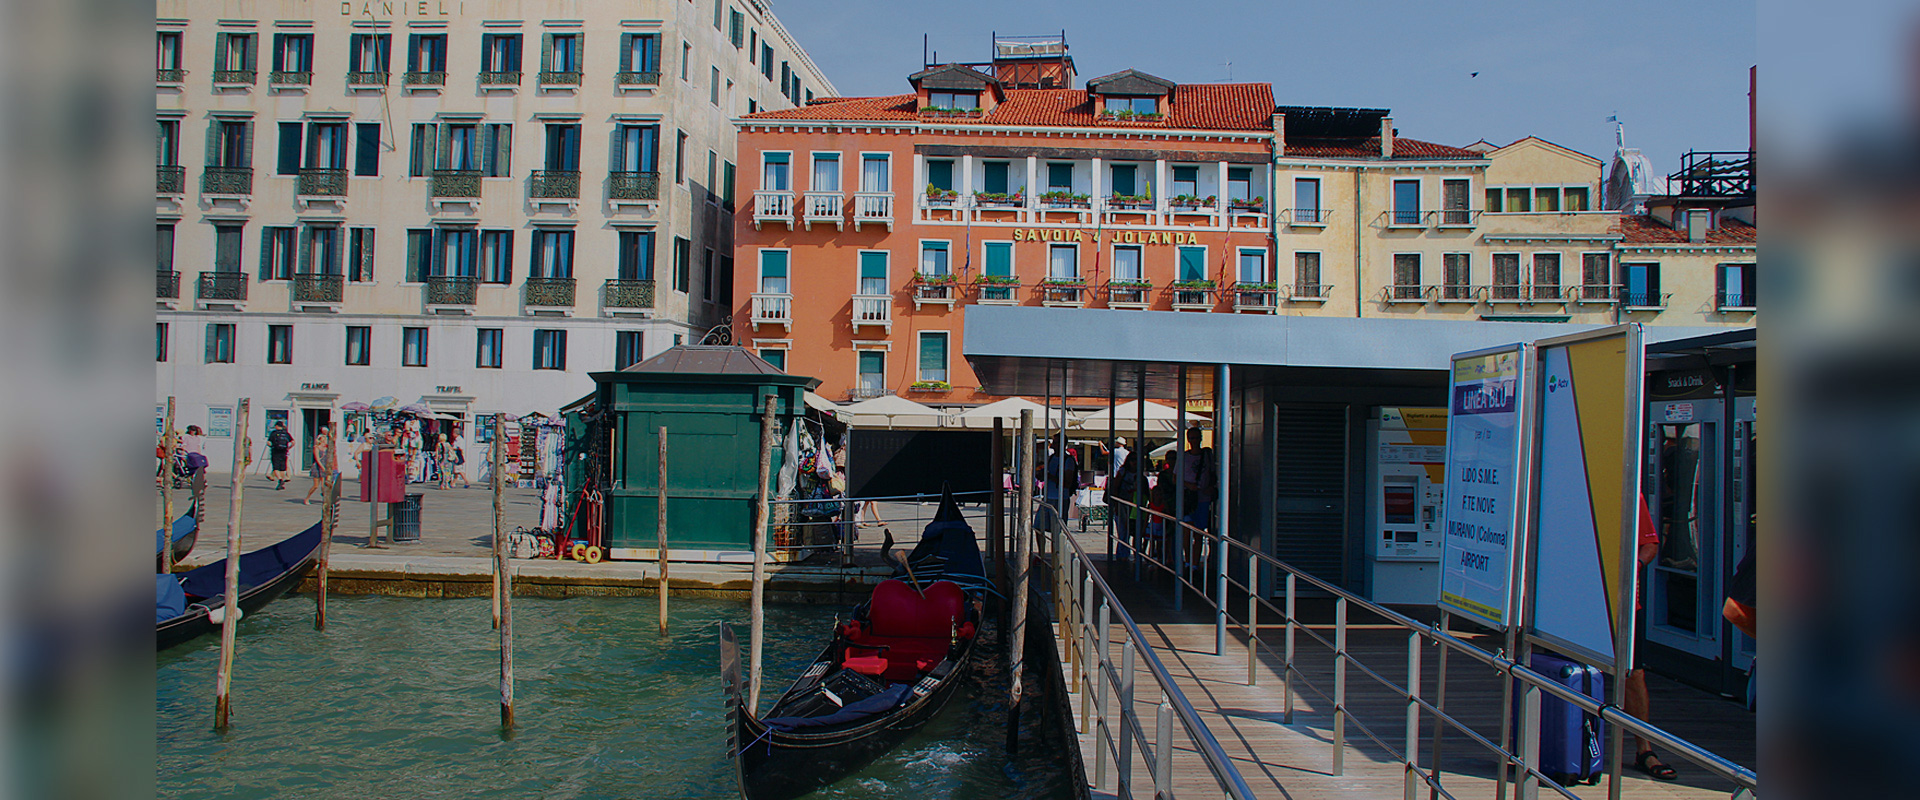 Rettungsmission in Venedig